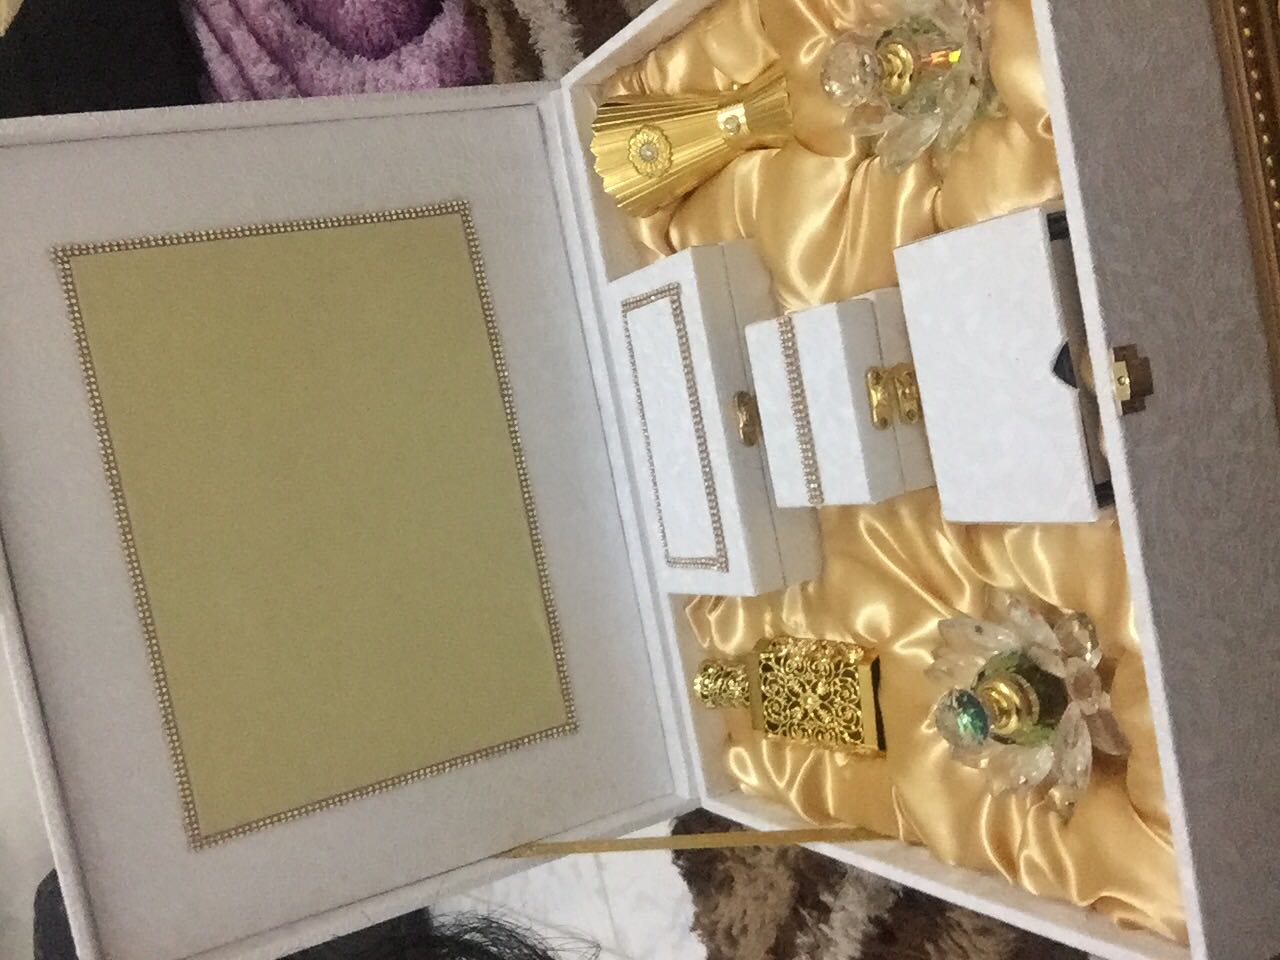 صندوق افراح وعطور ومهر للعروس